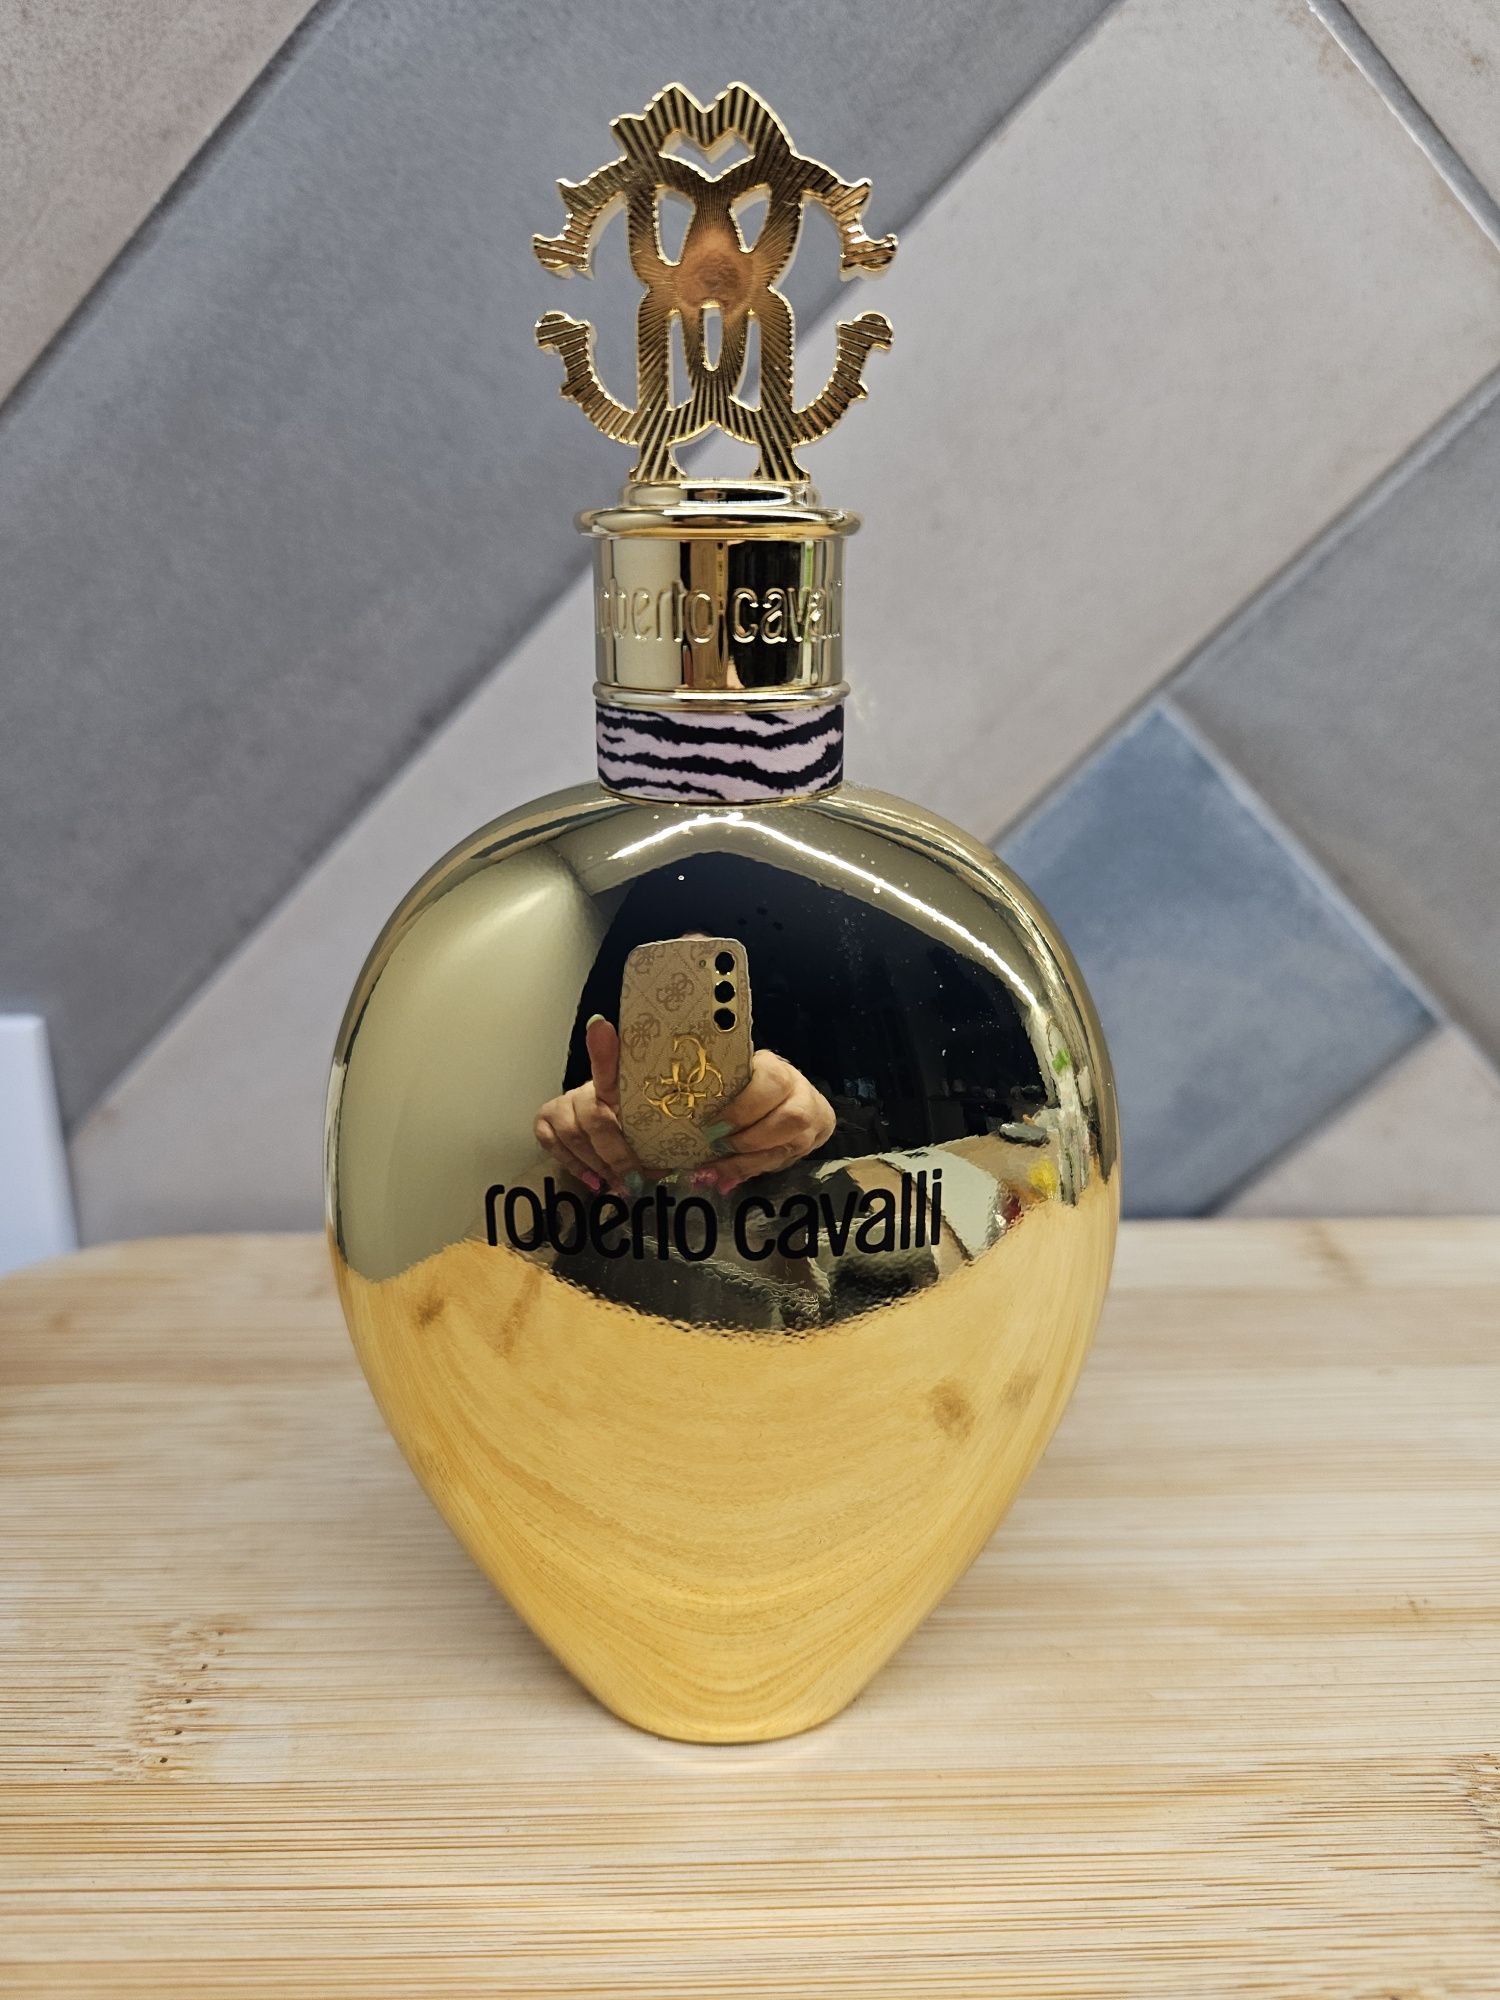 Roberto Cavalli Signature Golden Anniversary EDP intense perfumy 75ml